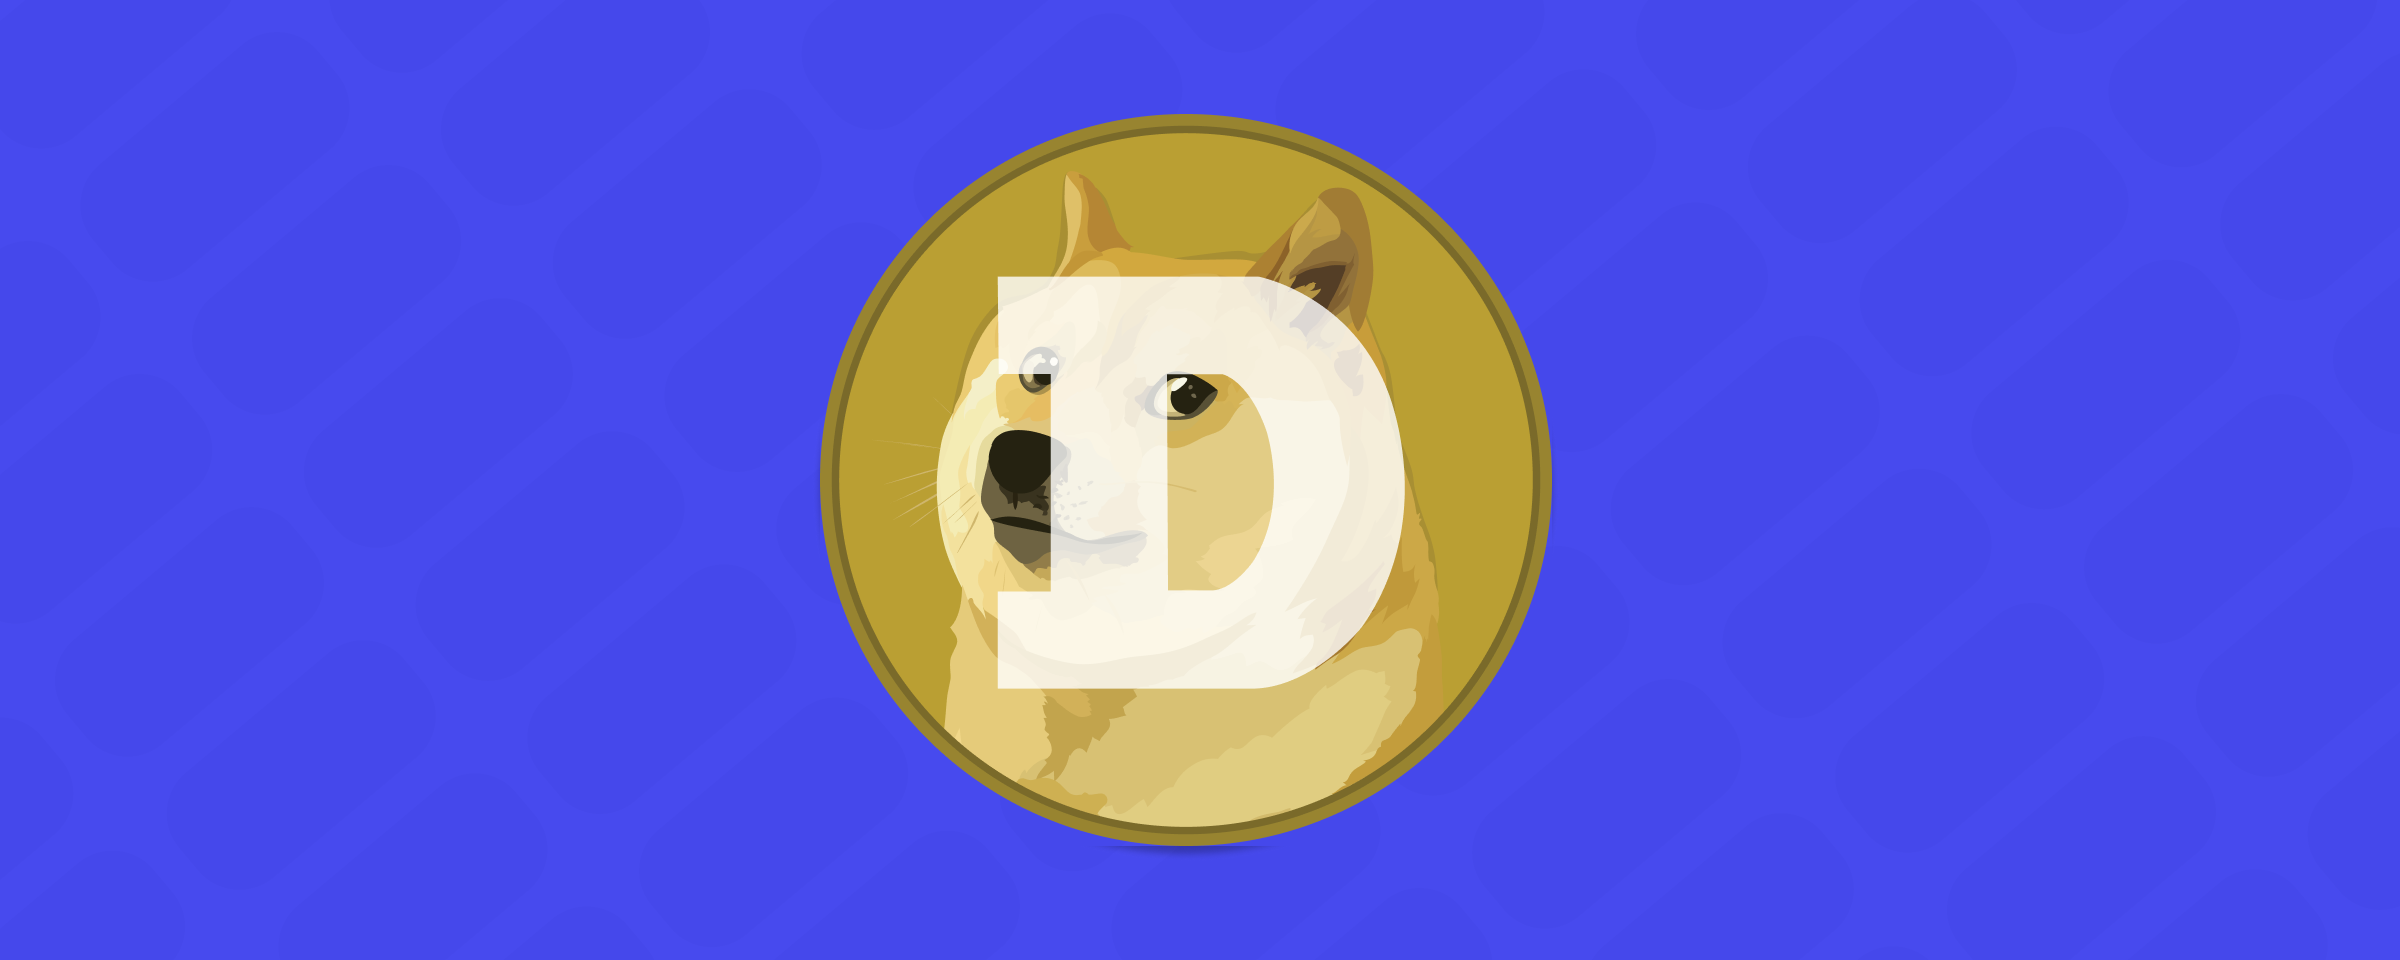 Memecoinen Dogecoin DOGE er tilgjengelig på Firi